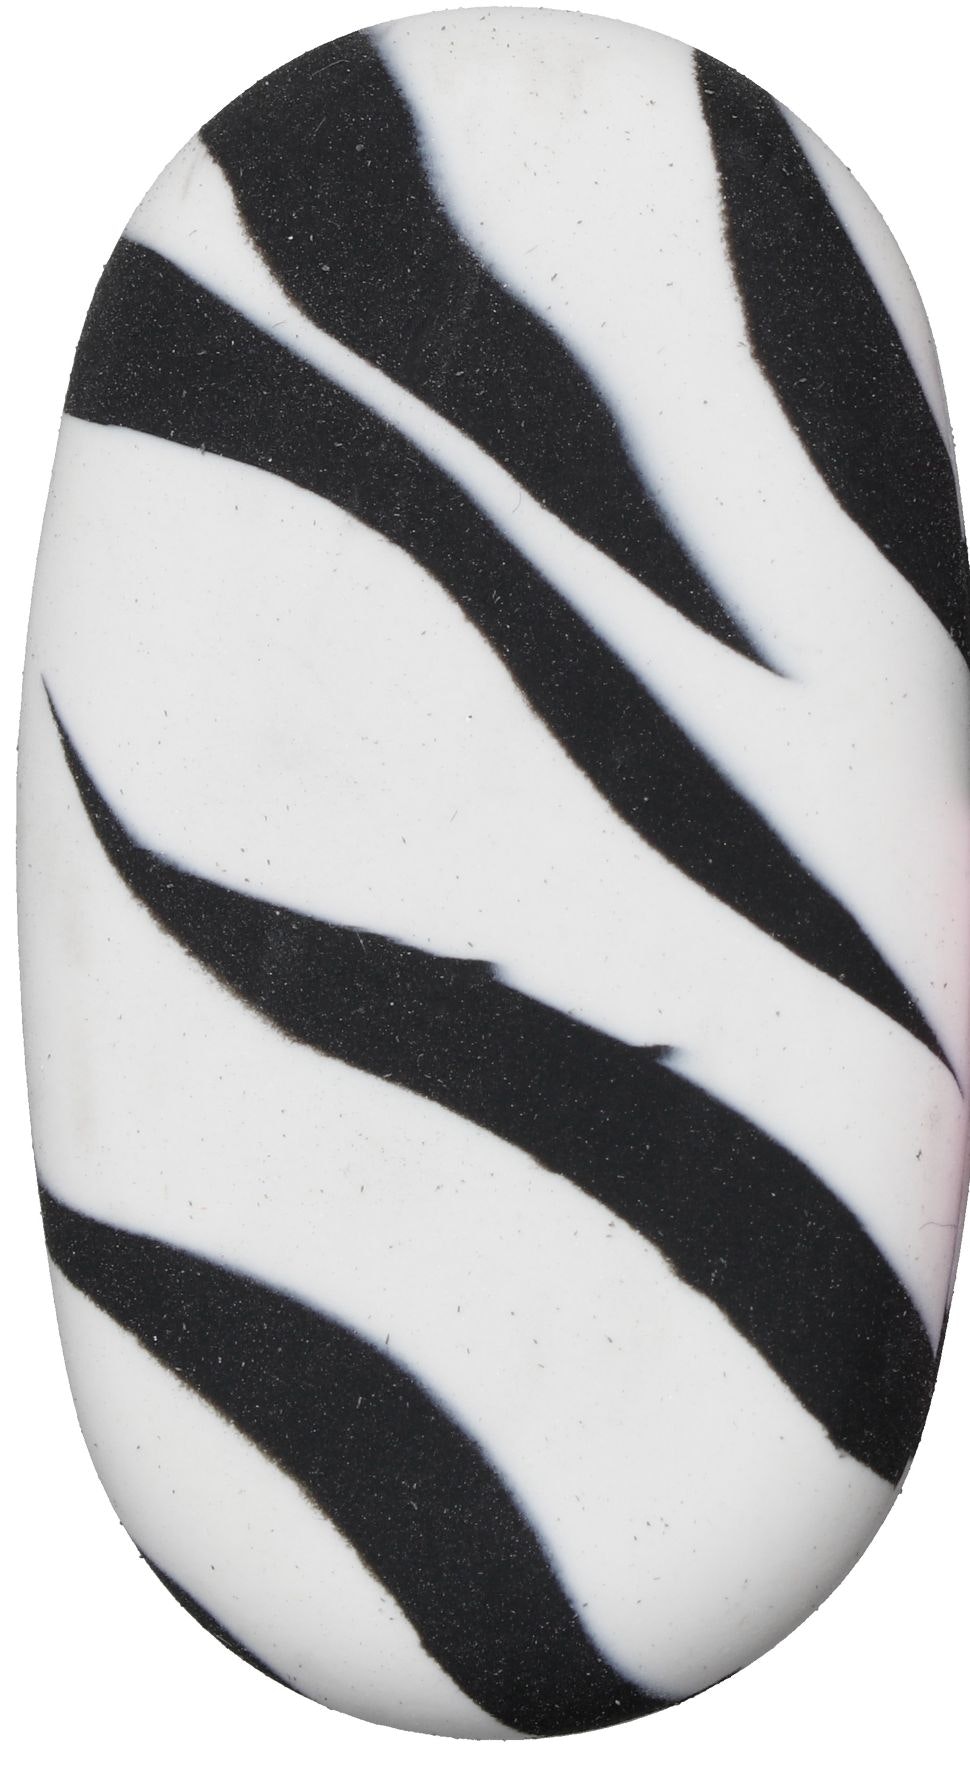 Zebra ett vitt och svartrandigt suddgummi från Hedlundgruppen.